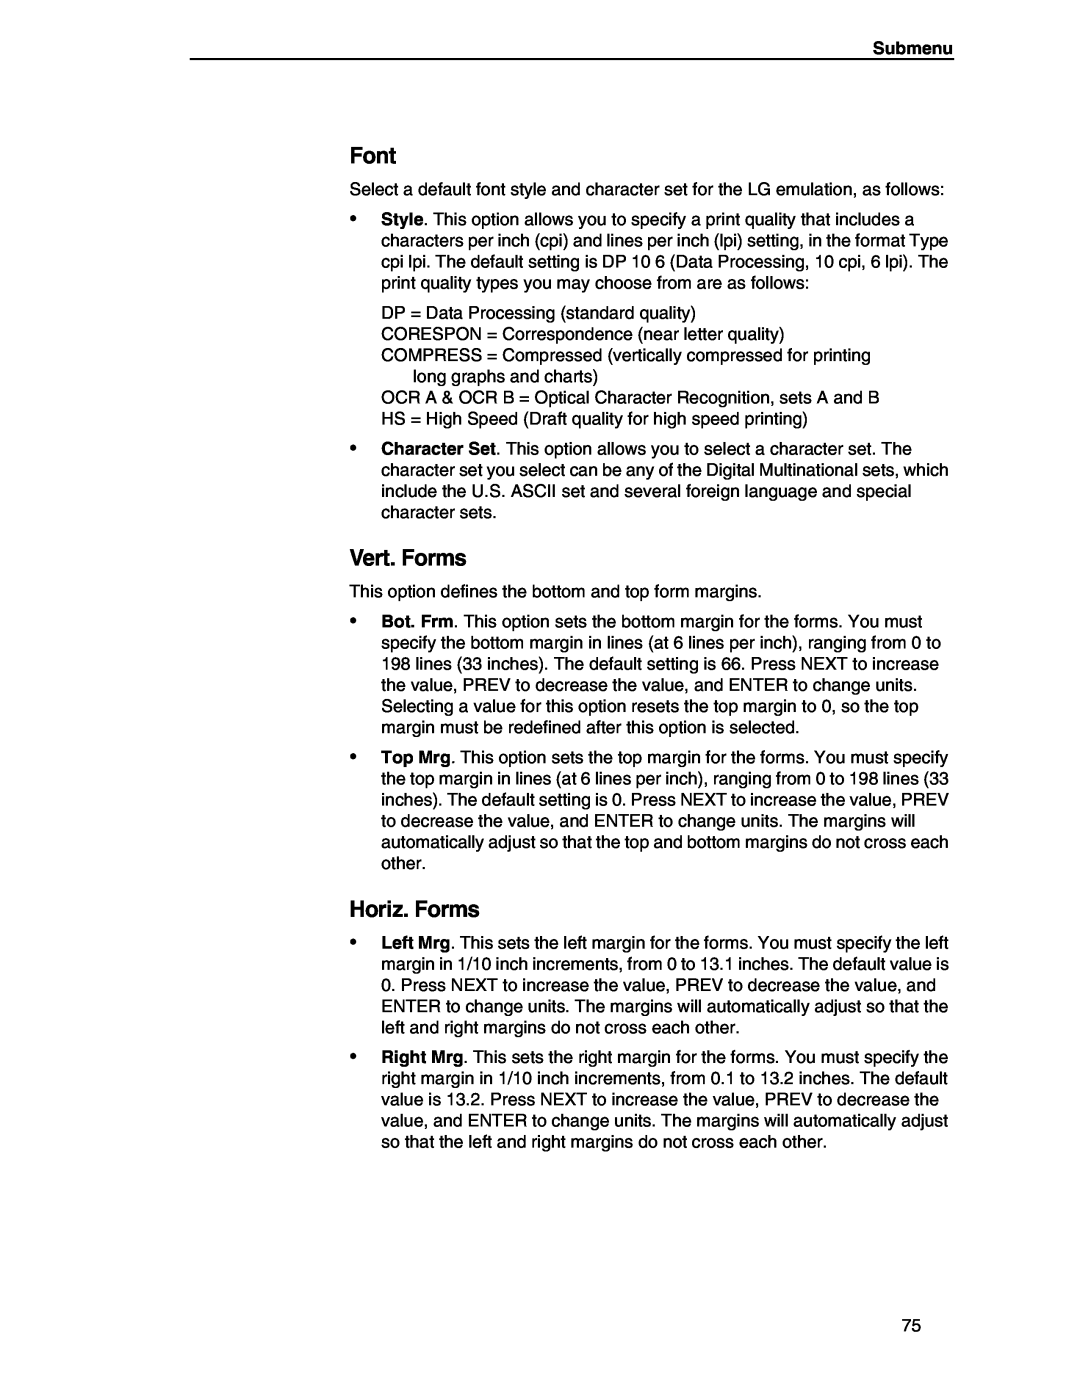 Compaq P5000 Series setup guide Font, Vert. Forms, Horiz. Forms, Submenu 